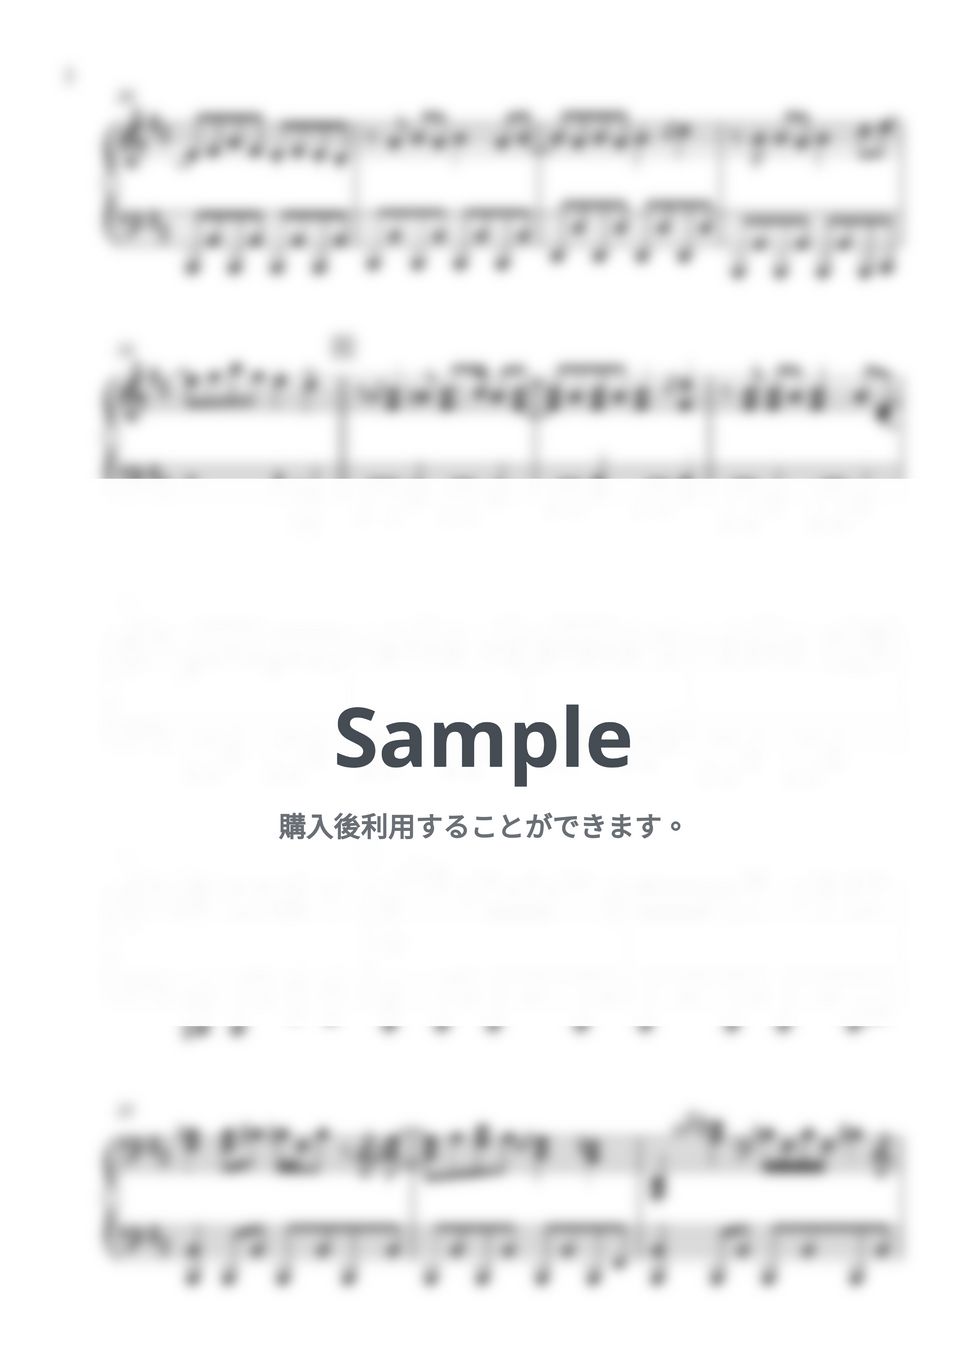 まふまふ - キューソネコカミのすゝめ (ピアノソロ) by しぐ (JunkMaker)